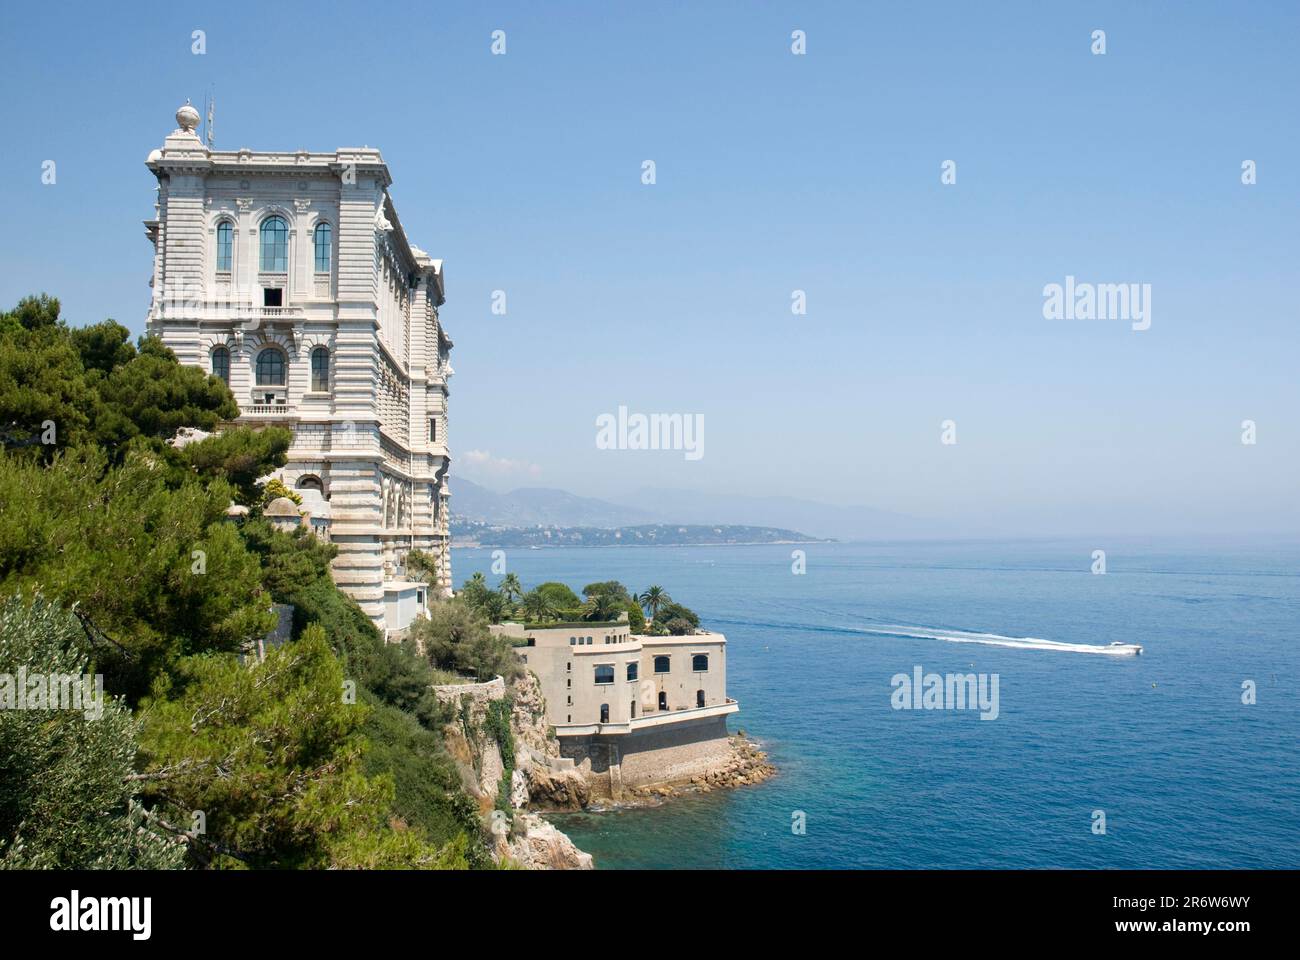 Research Institute, Musee Oceanographique, Oceanographic Museum, Monaco-Ville, Monte Carlo, Cote d'Azur, Monaco Stock Photo